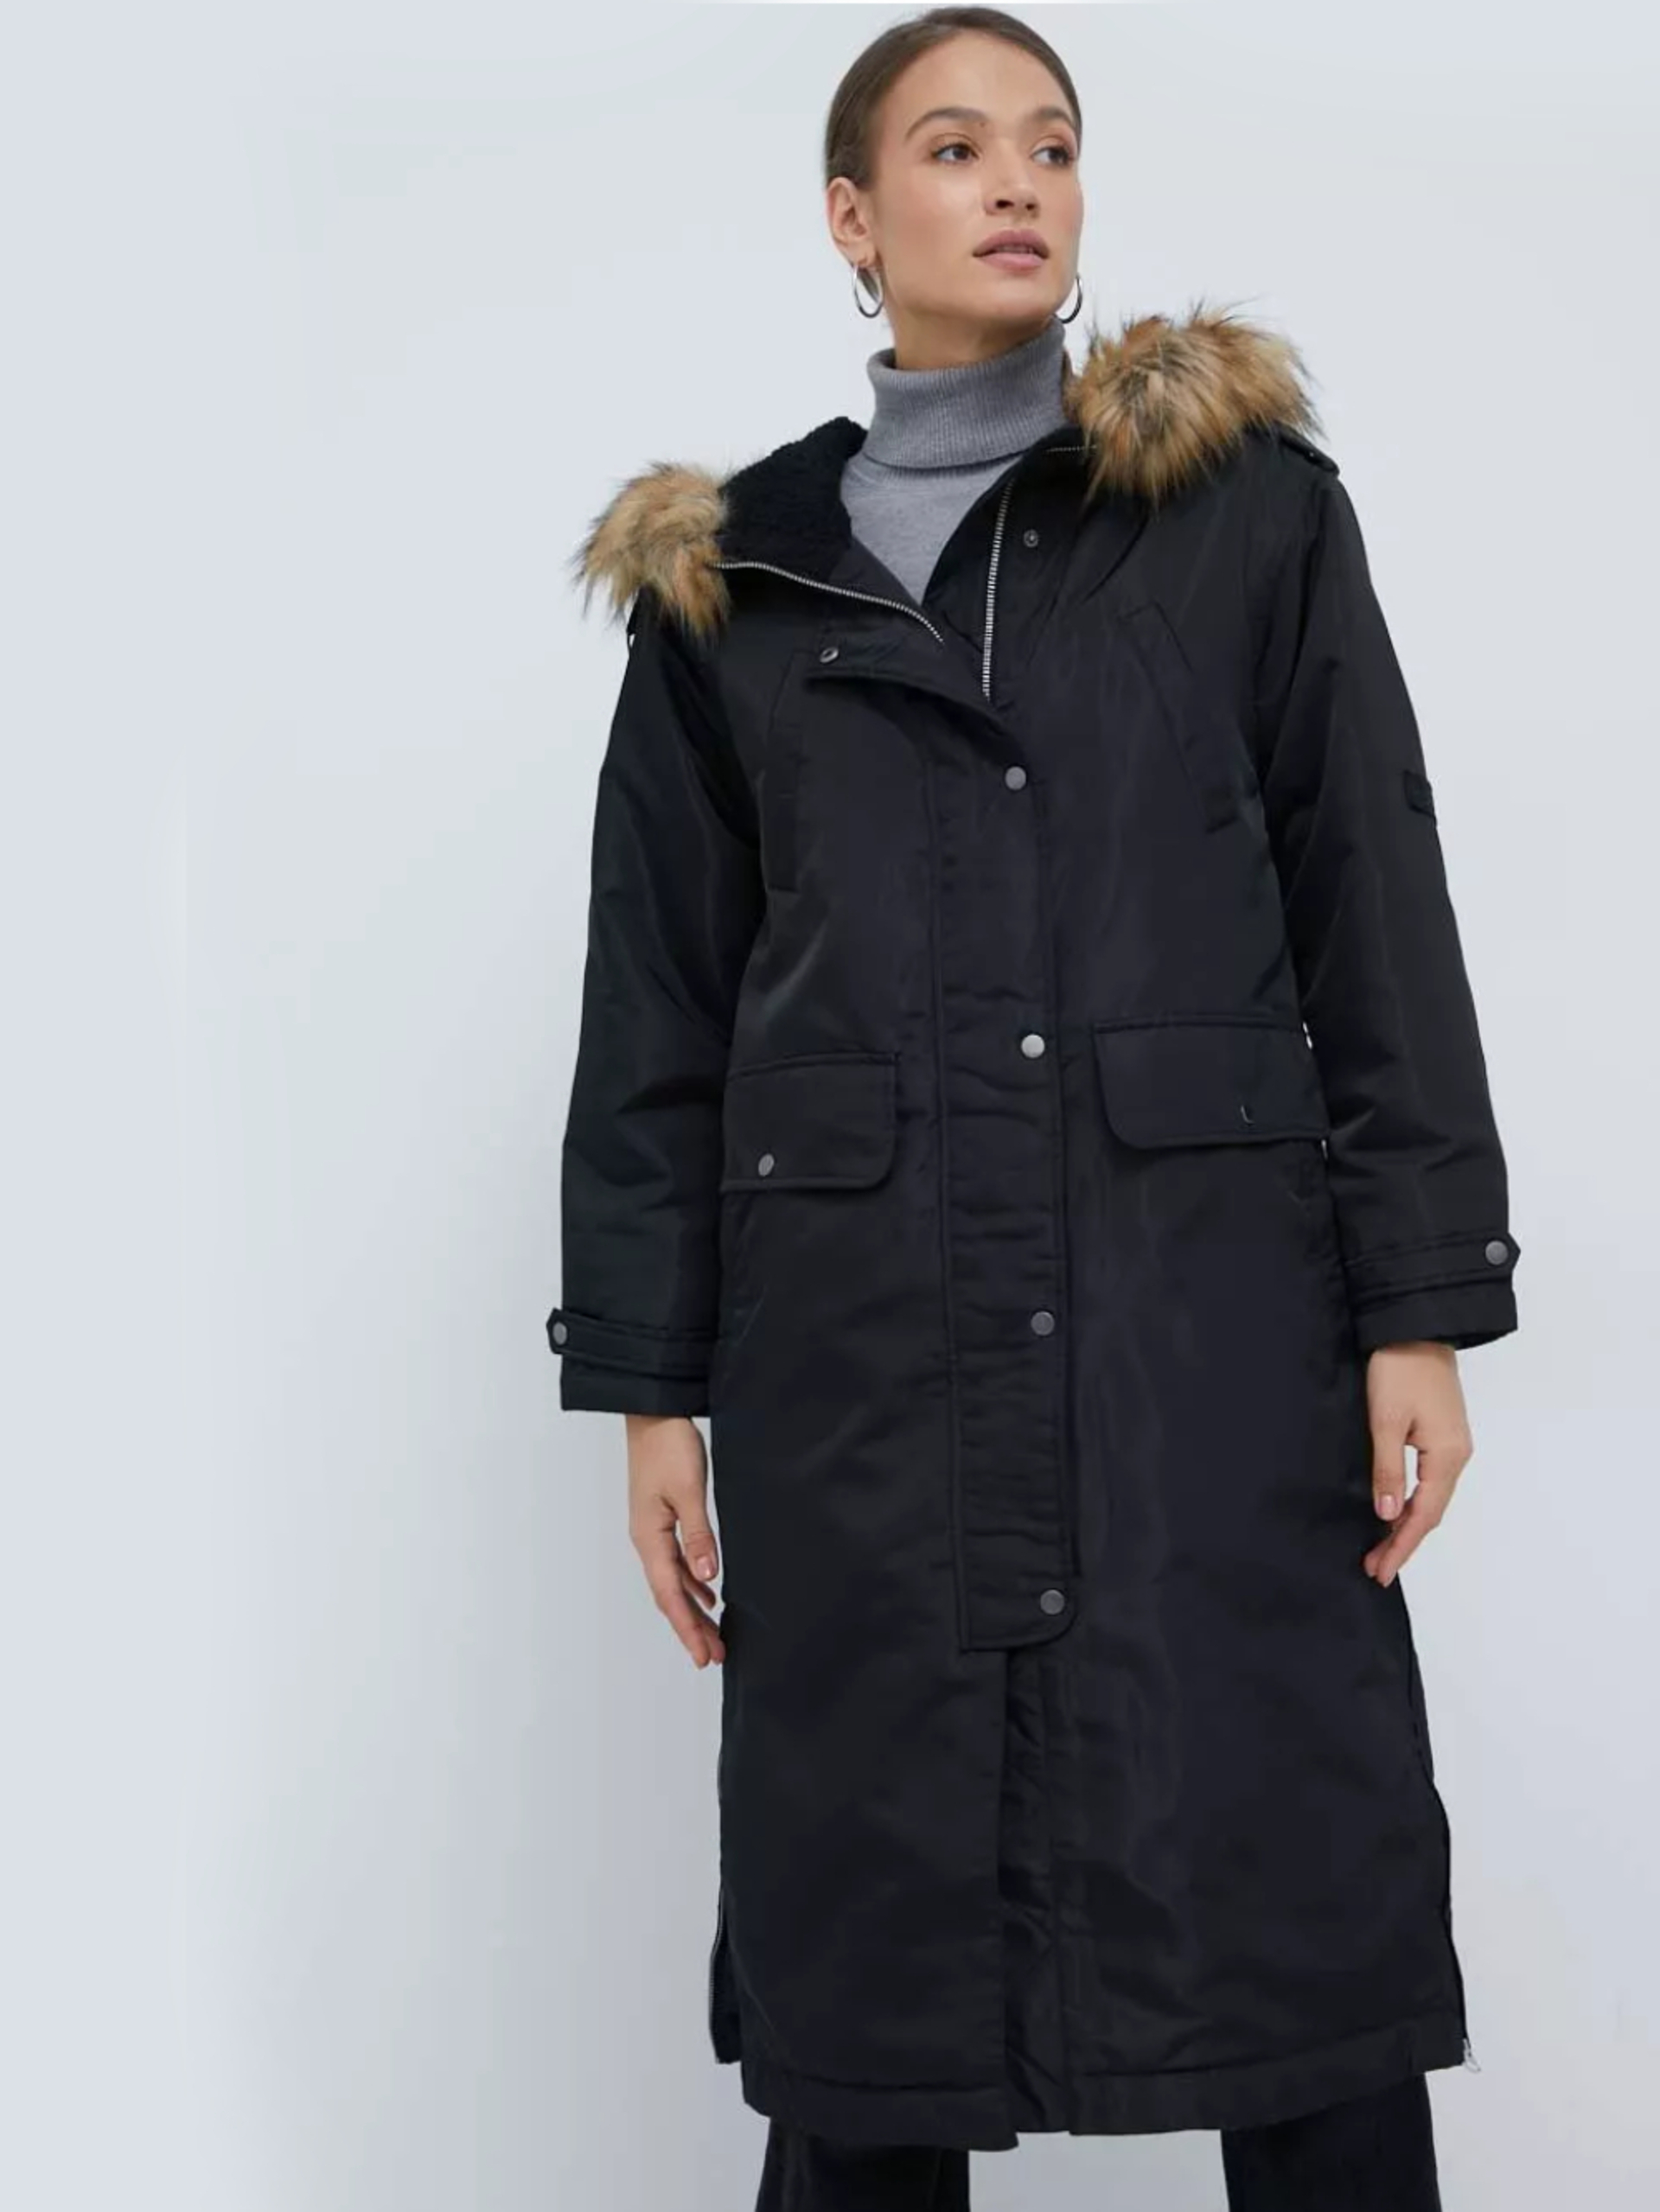 Pepe Jeans dámský černý kabát - XS (999)